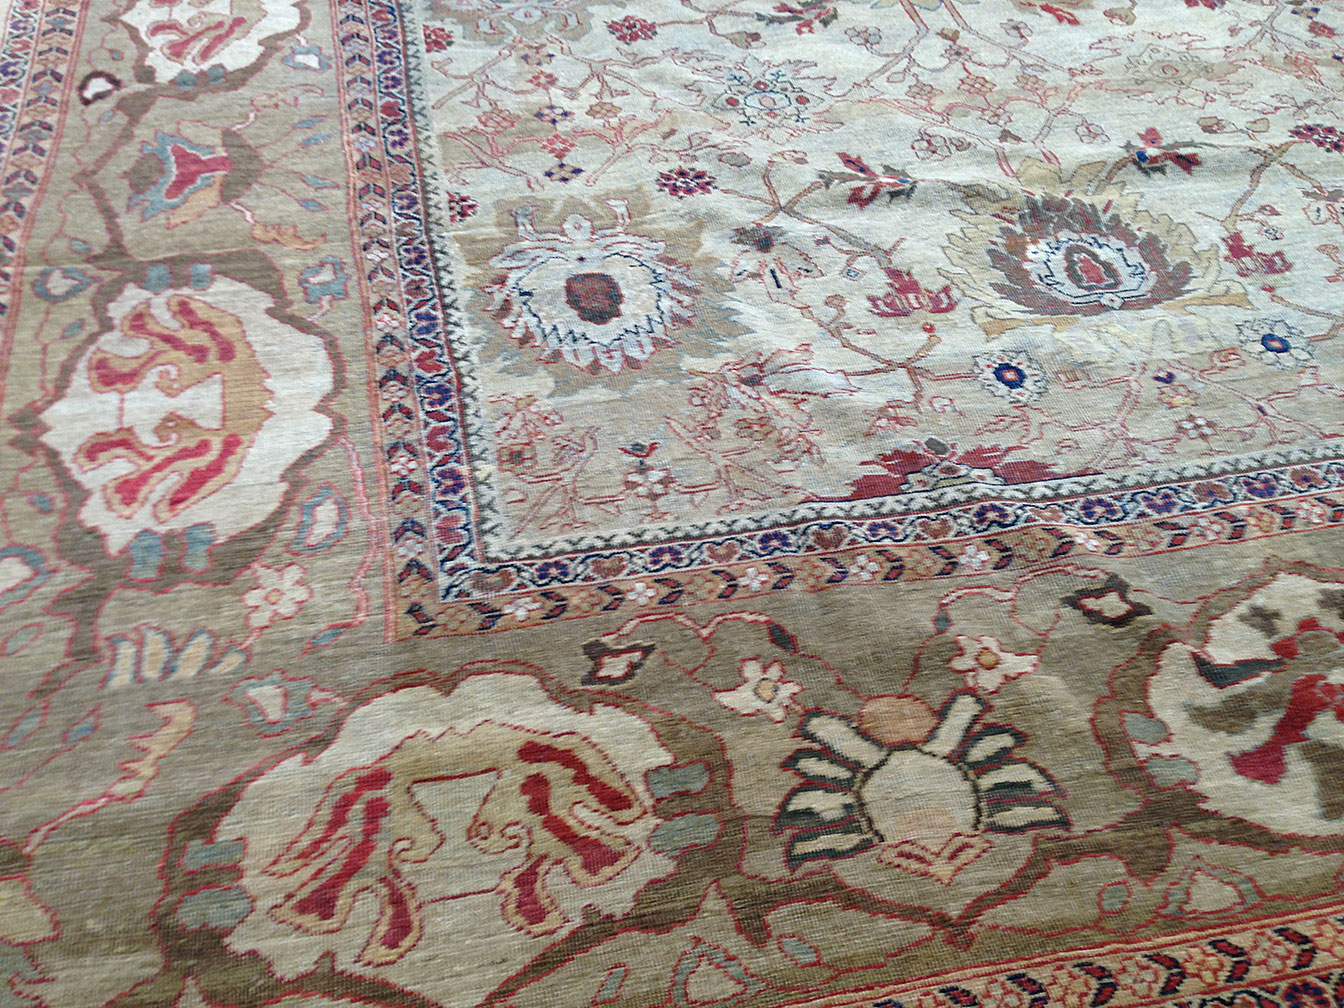 Antique mahal Carpet - # 11082